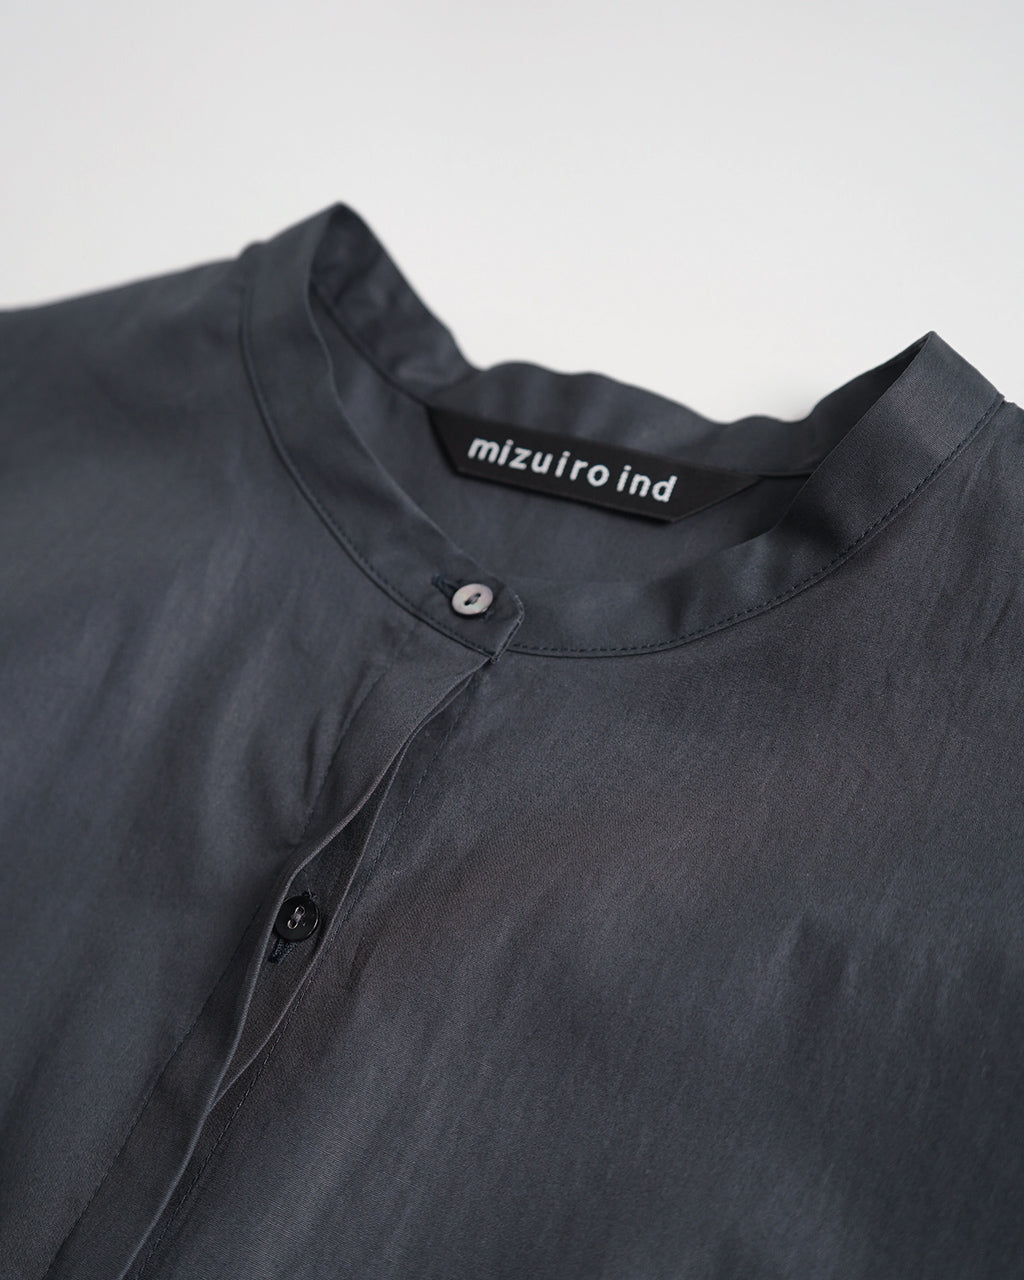 mizuiro ind ミズイロインド スタンドカラー エーライン シャツ stand collar A line shirt 1-230042【送料無料】